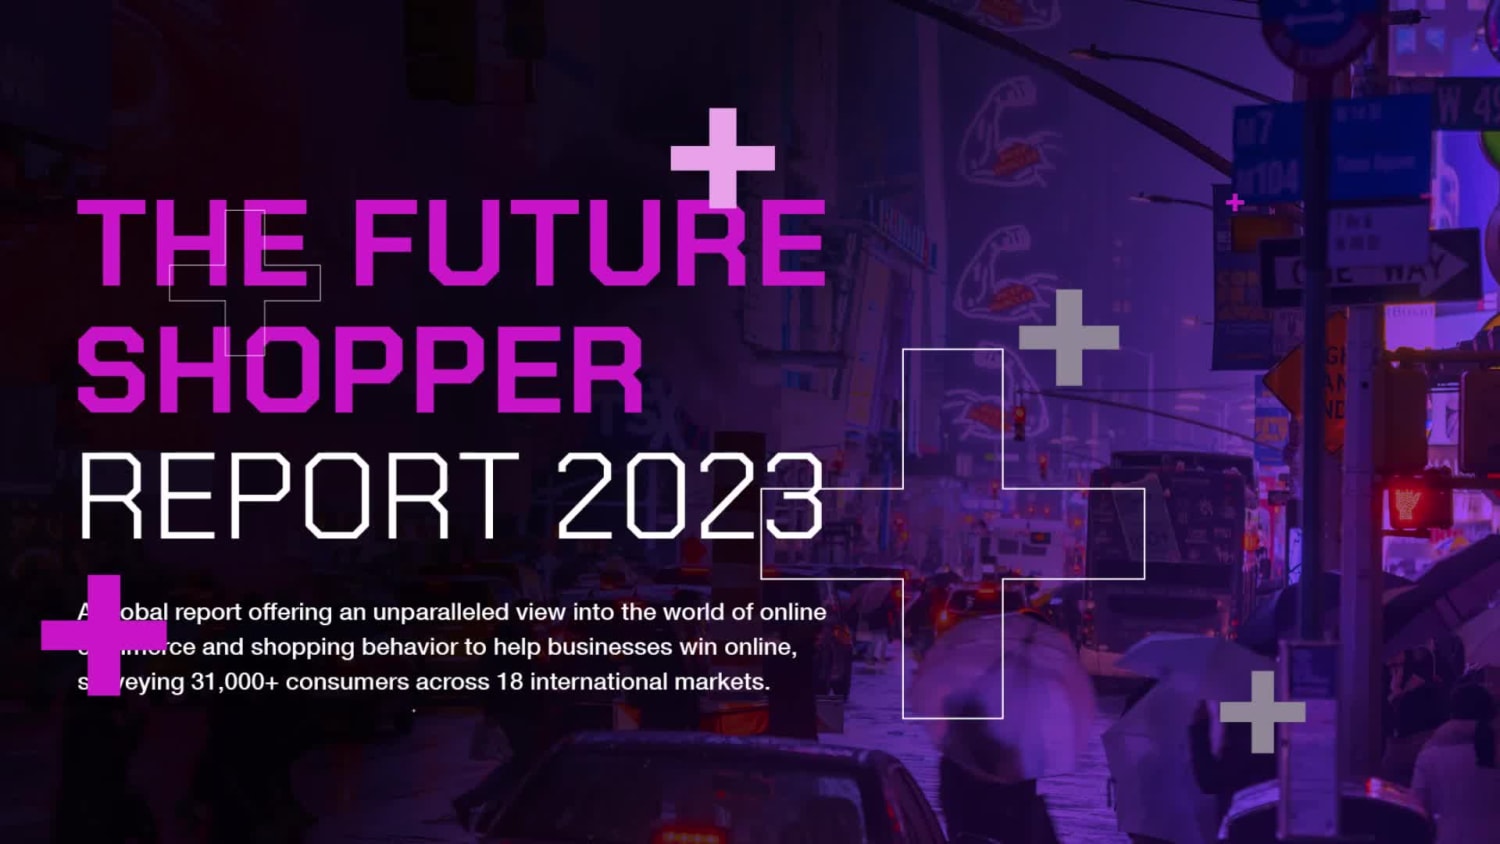 The Future Shopper Report 2023